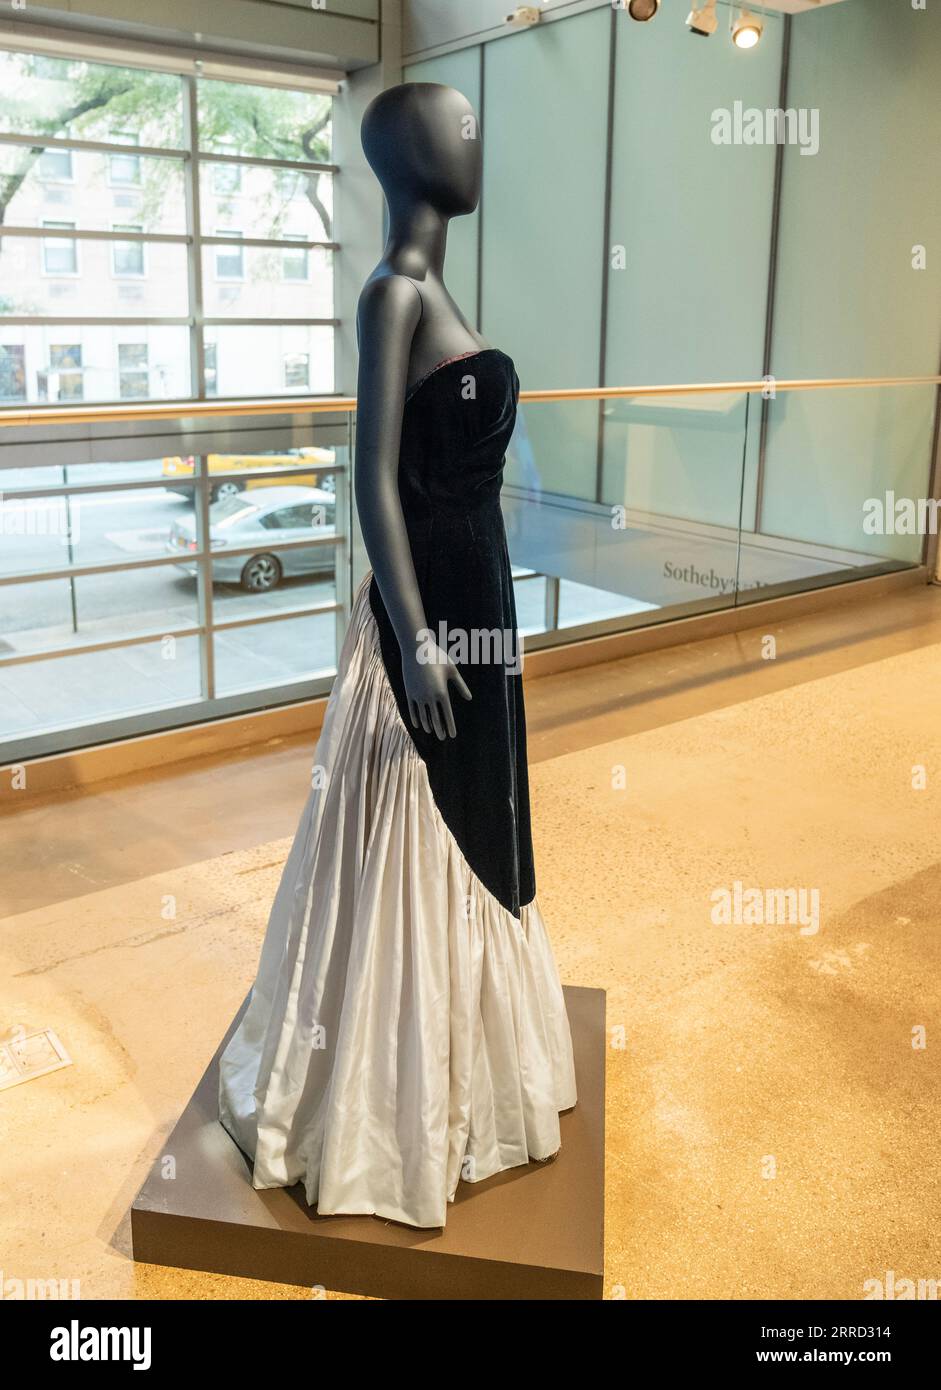 Murray Arbeid Evening Gown, getragen bei Prince Edward’s 21st Birthday Party von der verstorbenen britischen Prinzessin Diana, gesehen während einer Pressekonferenz in Sotheby's Auktionshaus in New York am 7. September 2023 Stockfoto